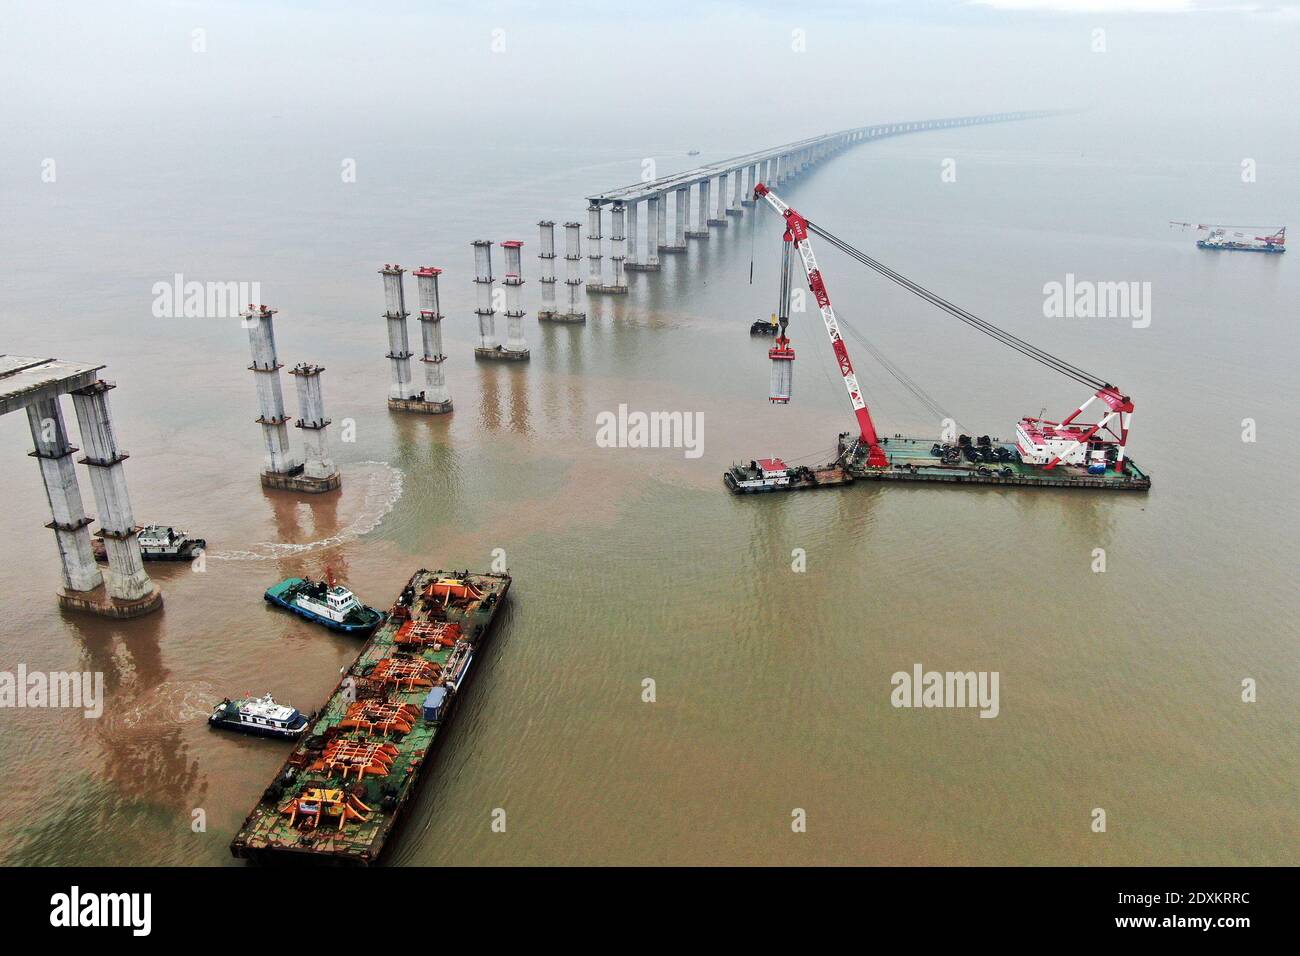 Una vista aerea delle gru che si erigono sui moli del Ponte Zhodai, città di Zhoushan, provincia di Zhejiang, nella Cina orientale, il 23 dicembre 2020. Il Foto Stock